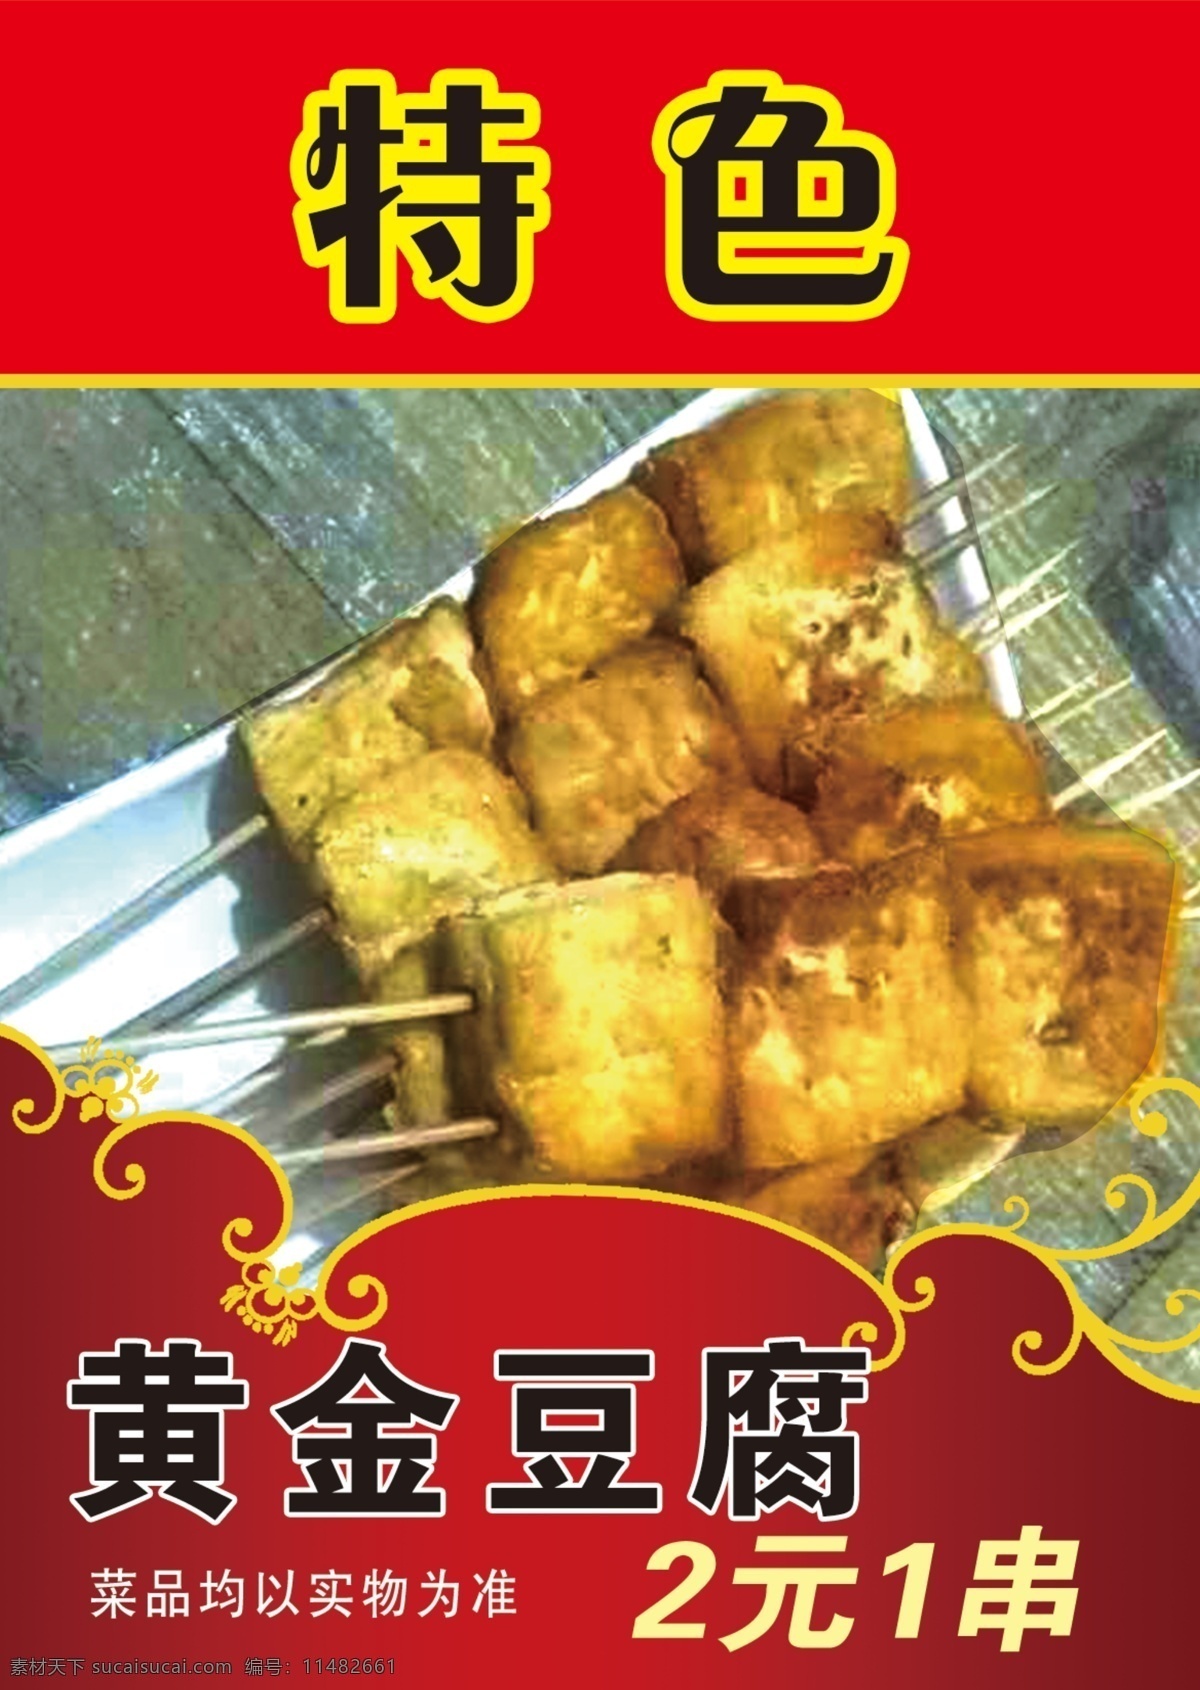 黄金豆腐 烧烤 灯箱片 特色 烤串 展示牌